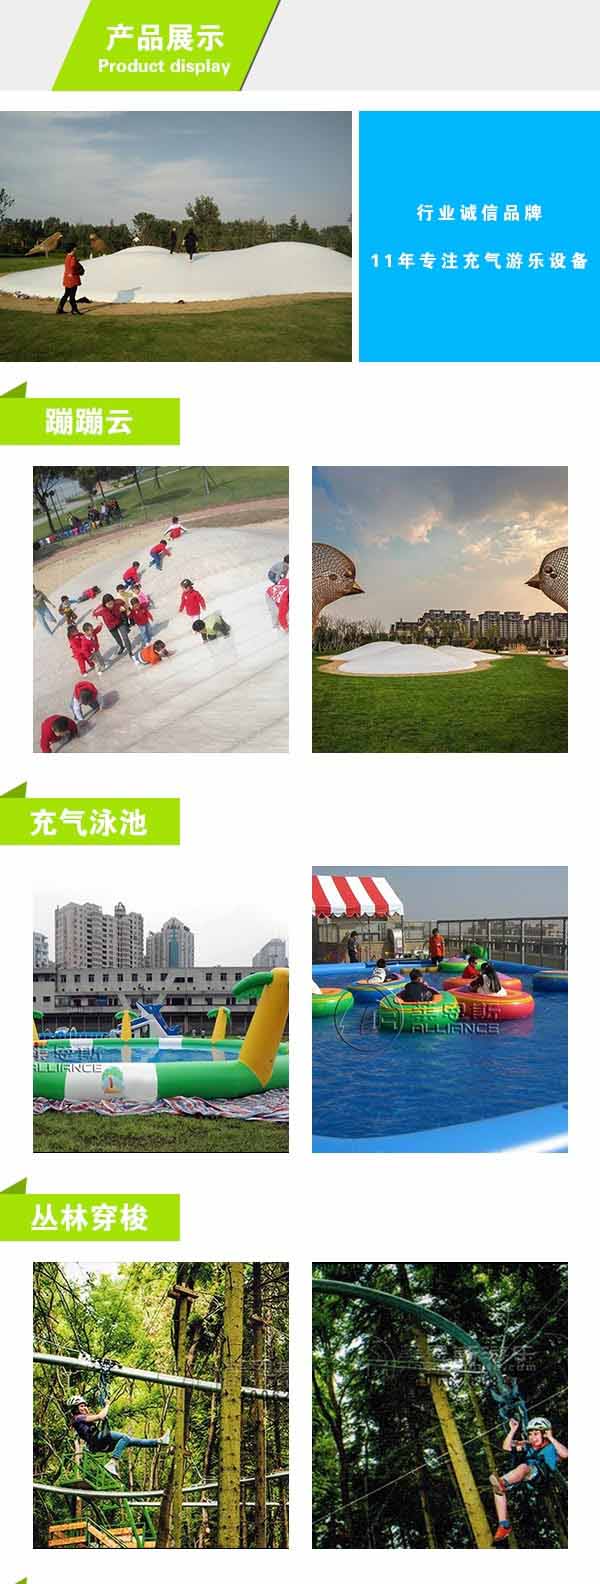 郑州移动水上乐园投资要多少钱 移动水上乐园  莱恩斯游乐 3